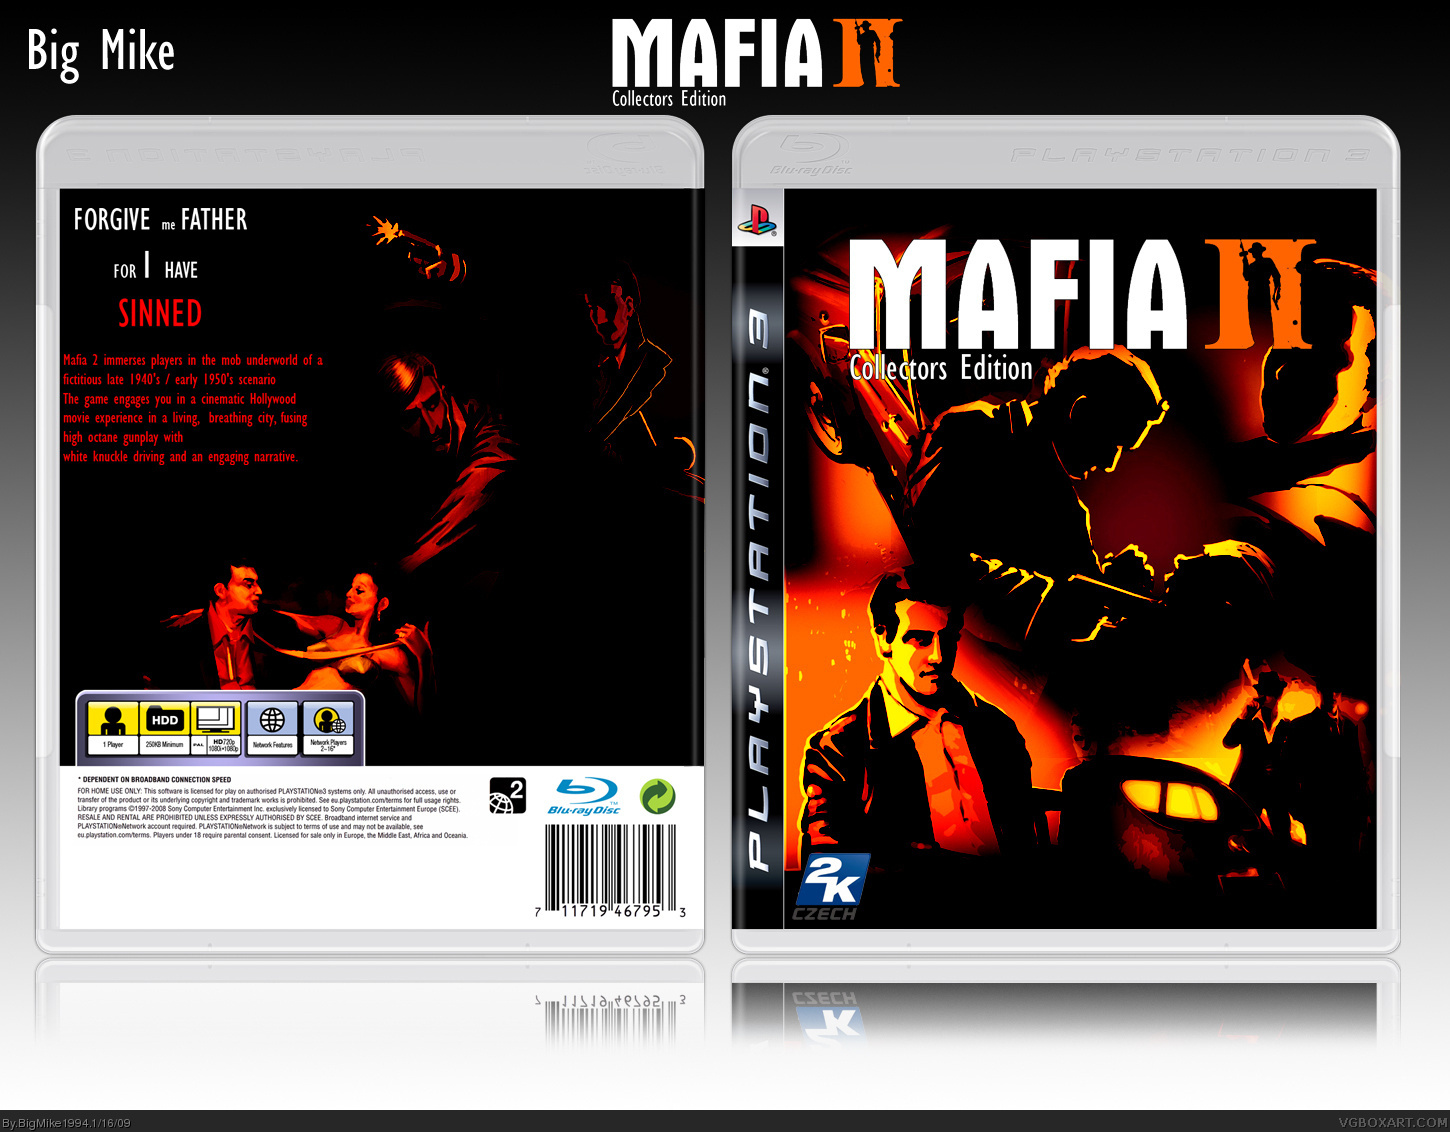 Mafia II Collectors Edition box cover